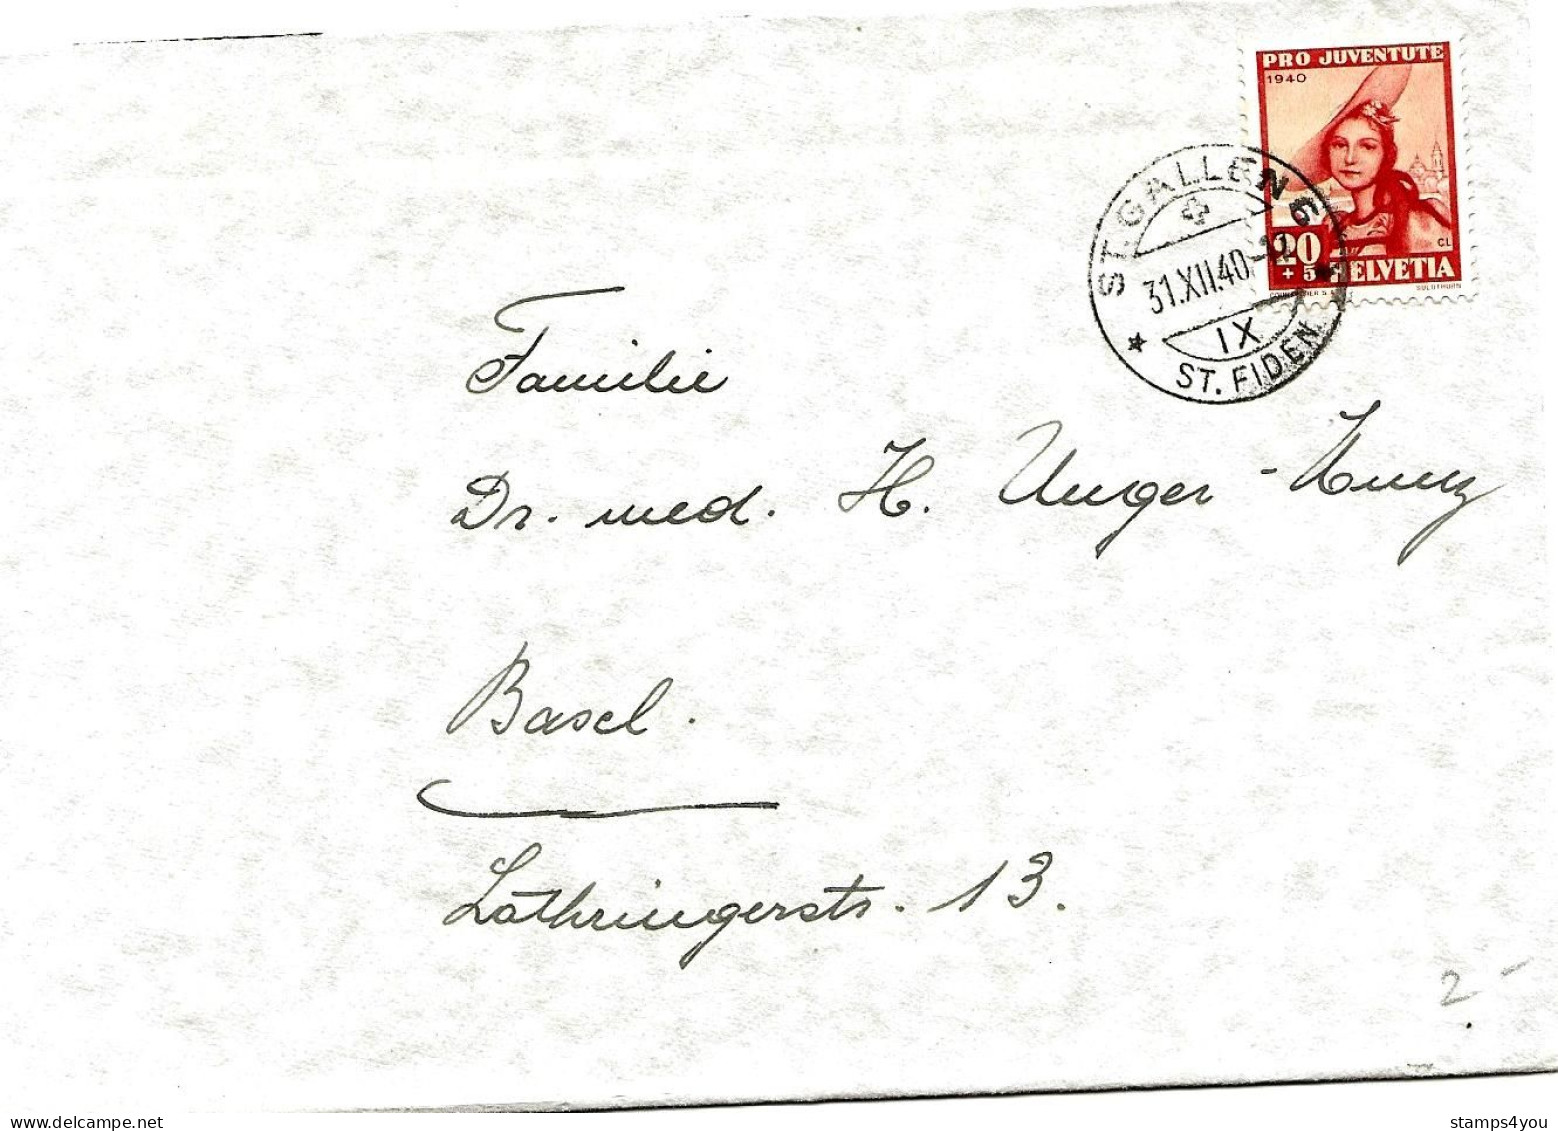 79 - 89 - Enveloppe Avec Timbre Pro Juventute 1940 - Cachet à Date St Gallen 31.12.40. - Storia Postale